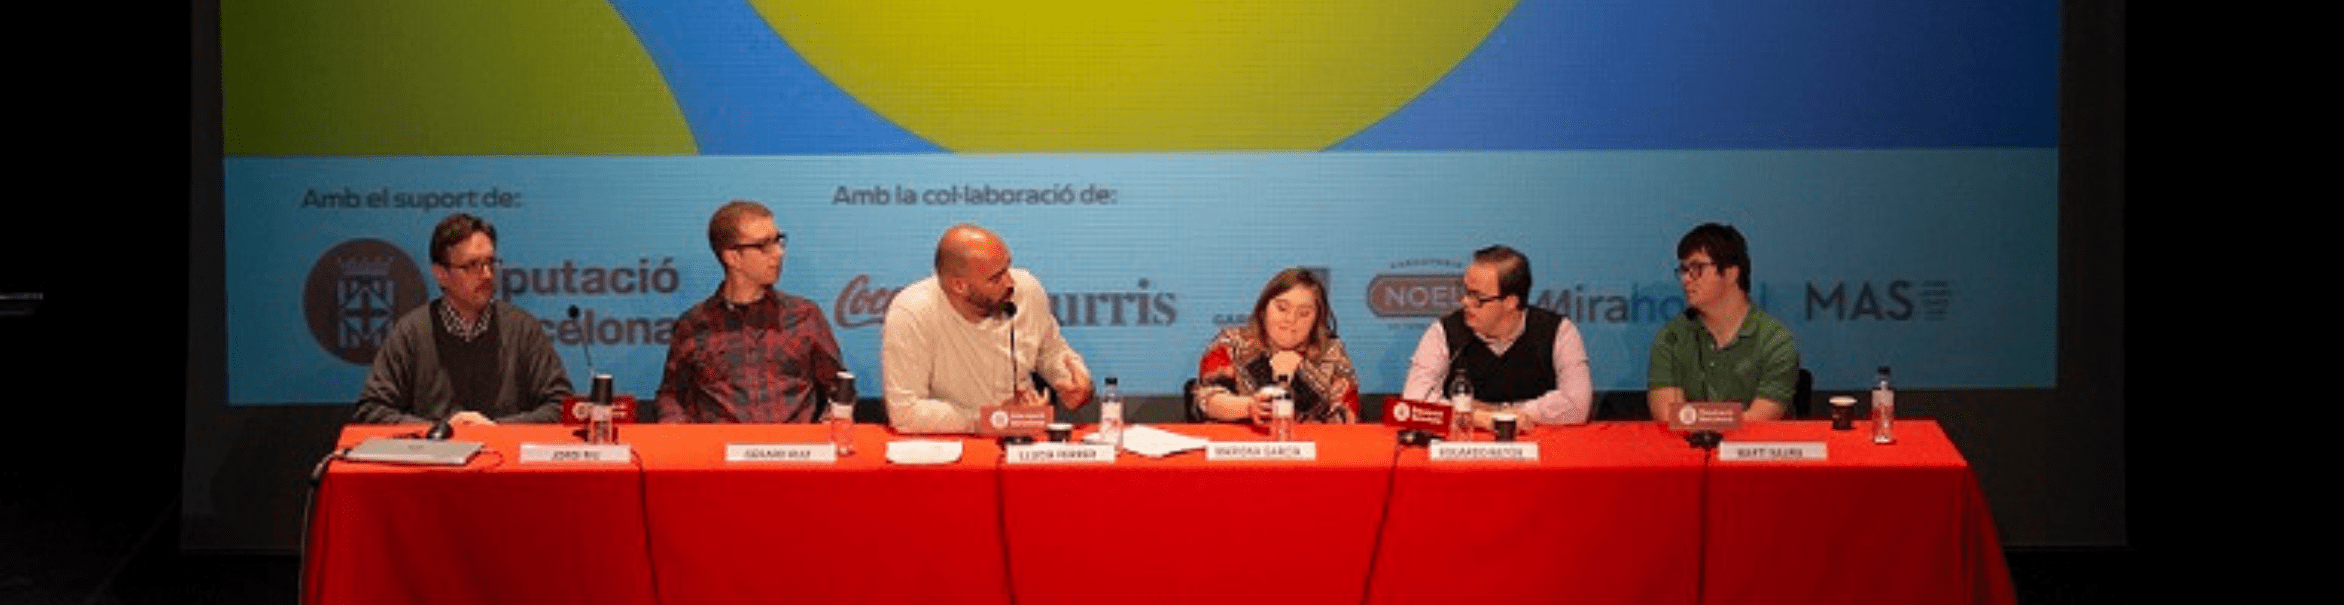 Mirahostel y la Fundació Catalana Síndrome de Down, bajo una misma causa